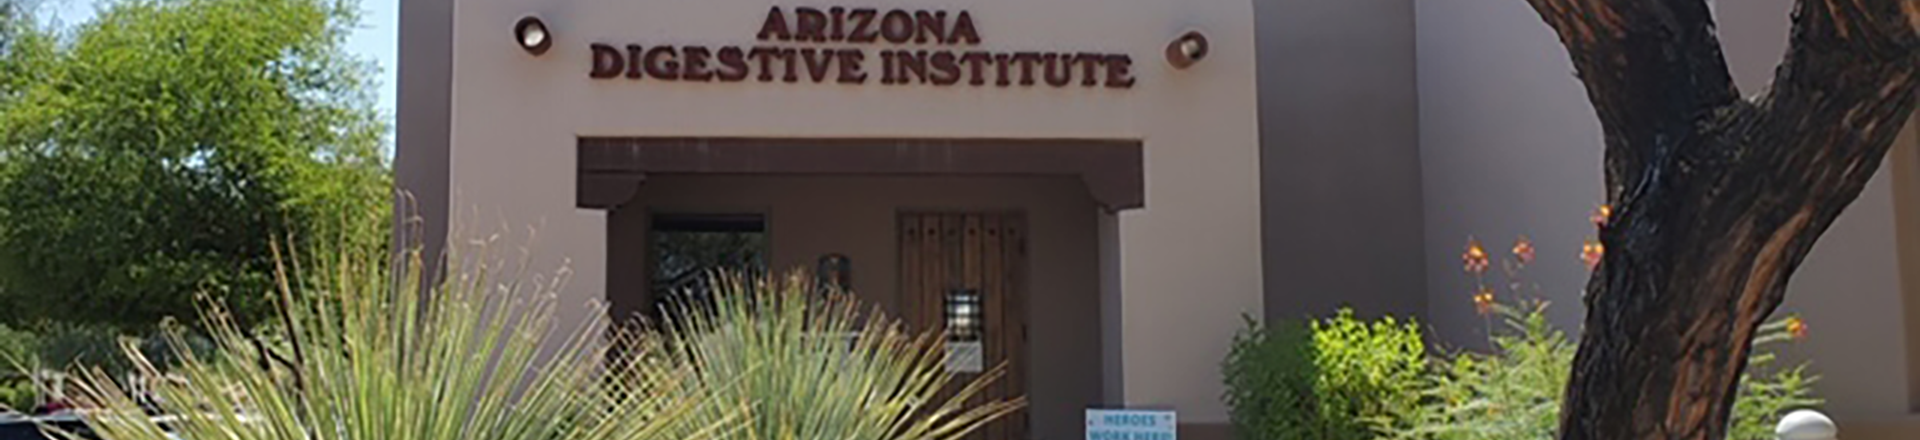 Arizona Digestive Institute